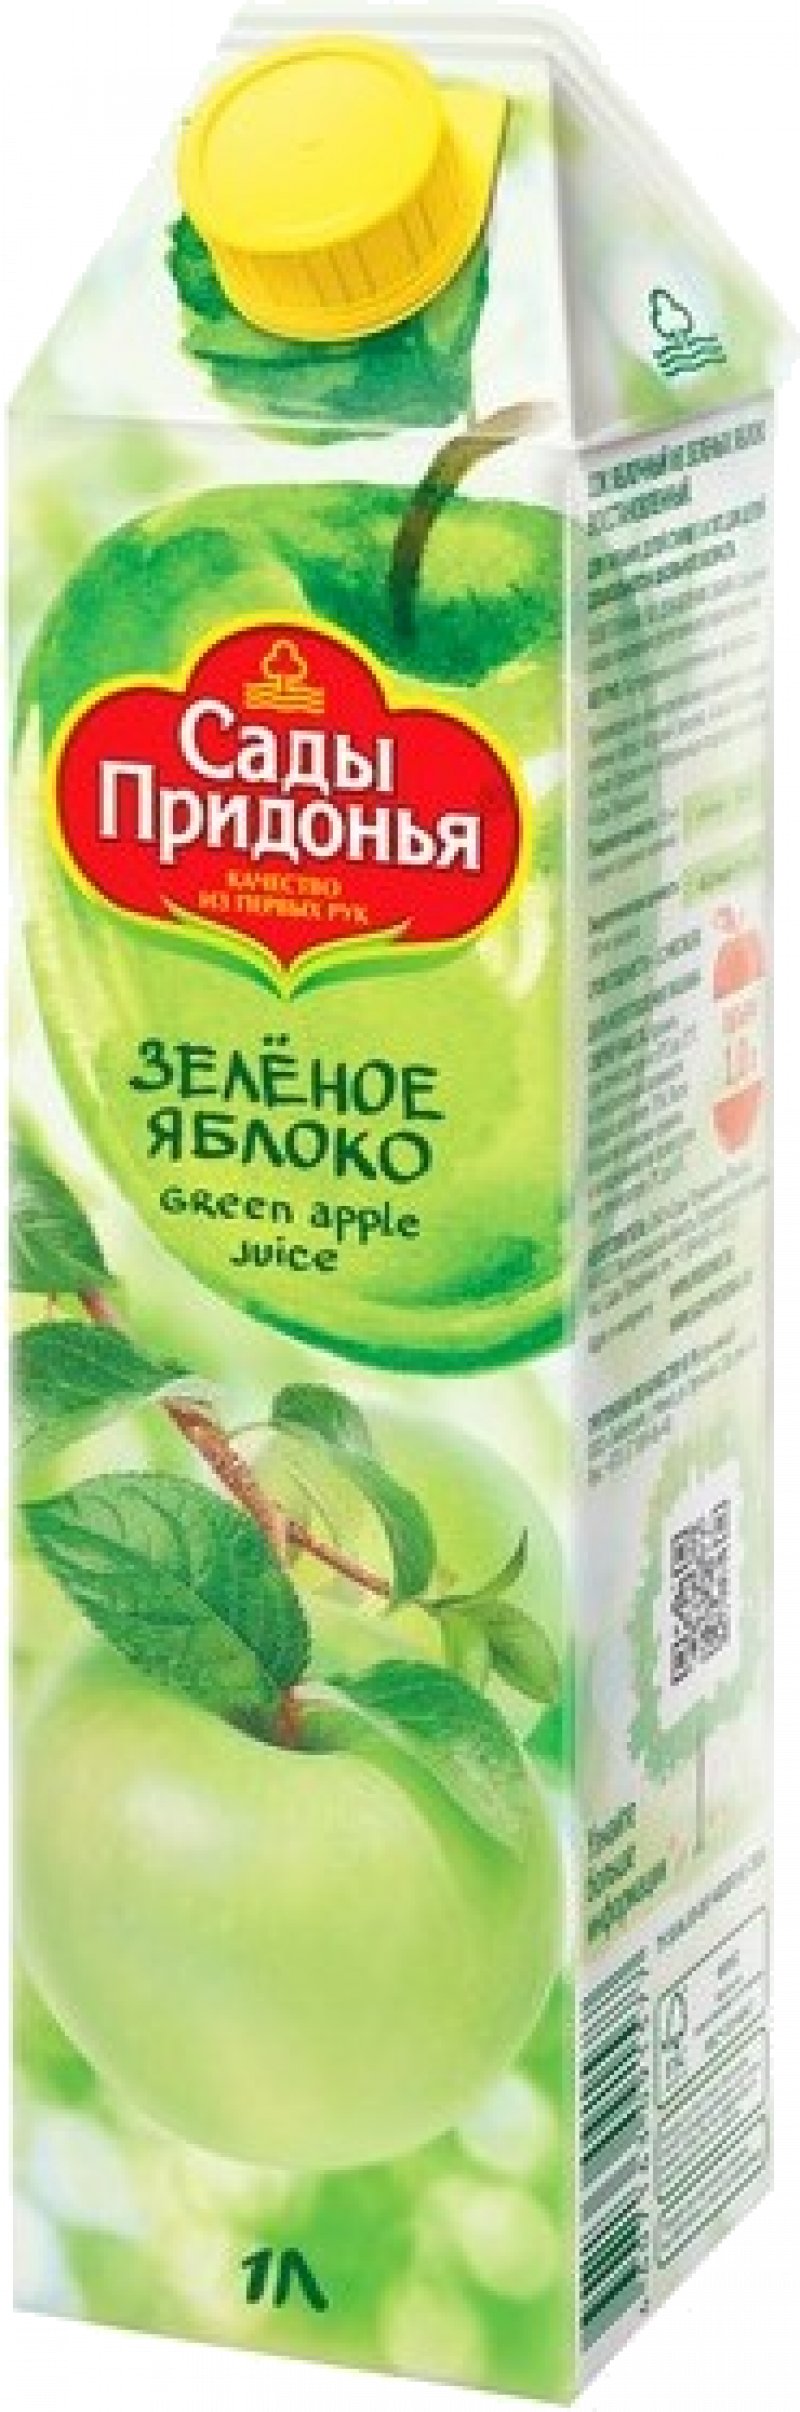 Сок 1,0л Сады Придонья сок из зеленых яблок